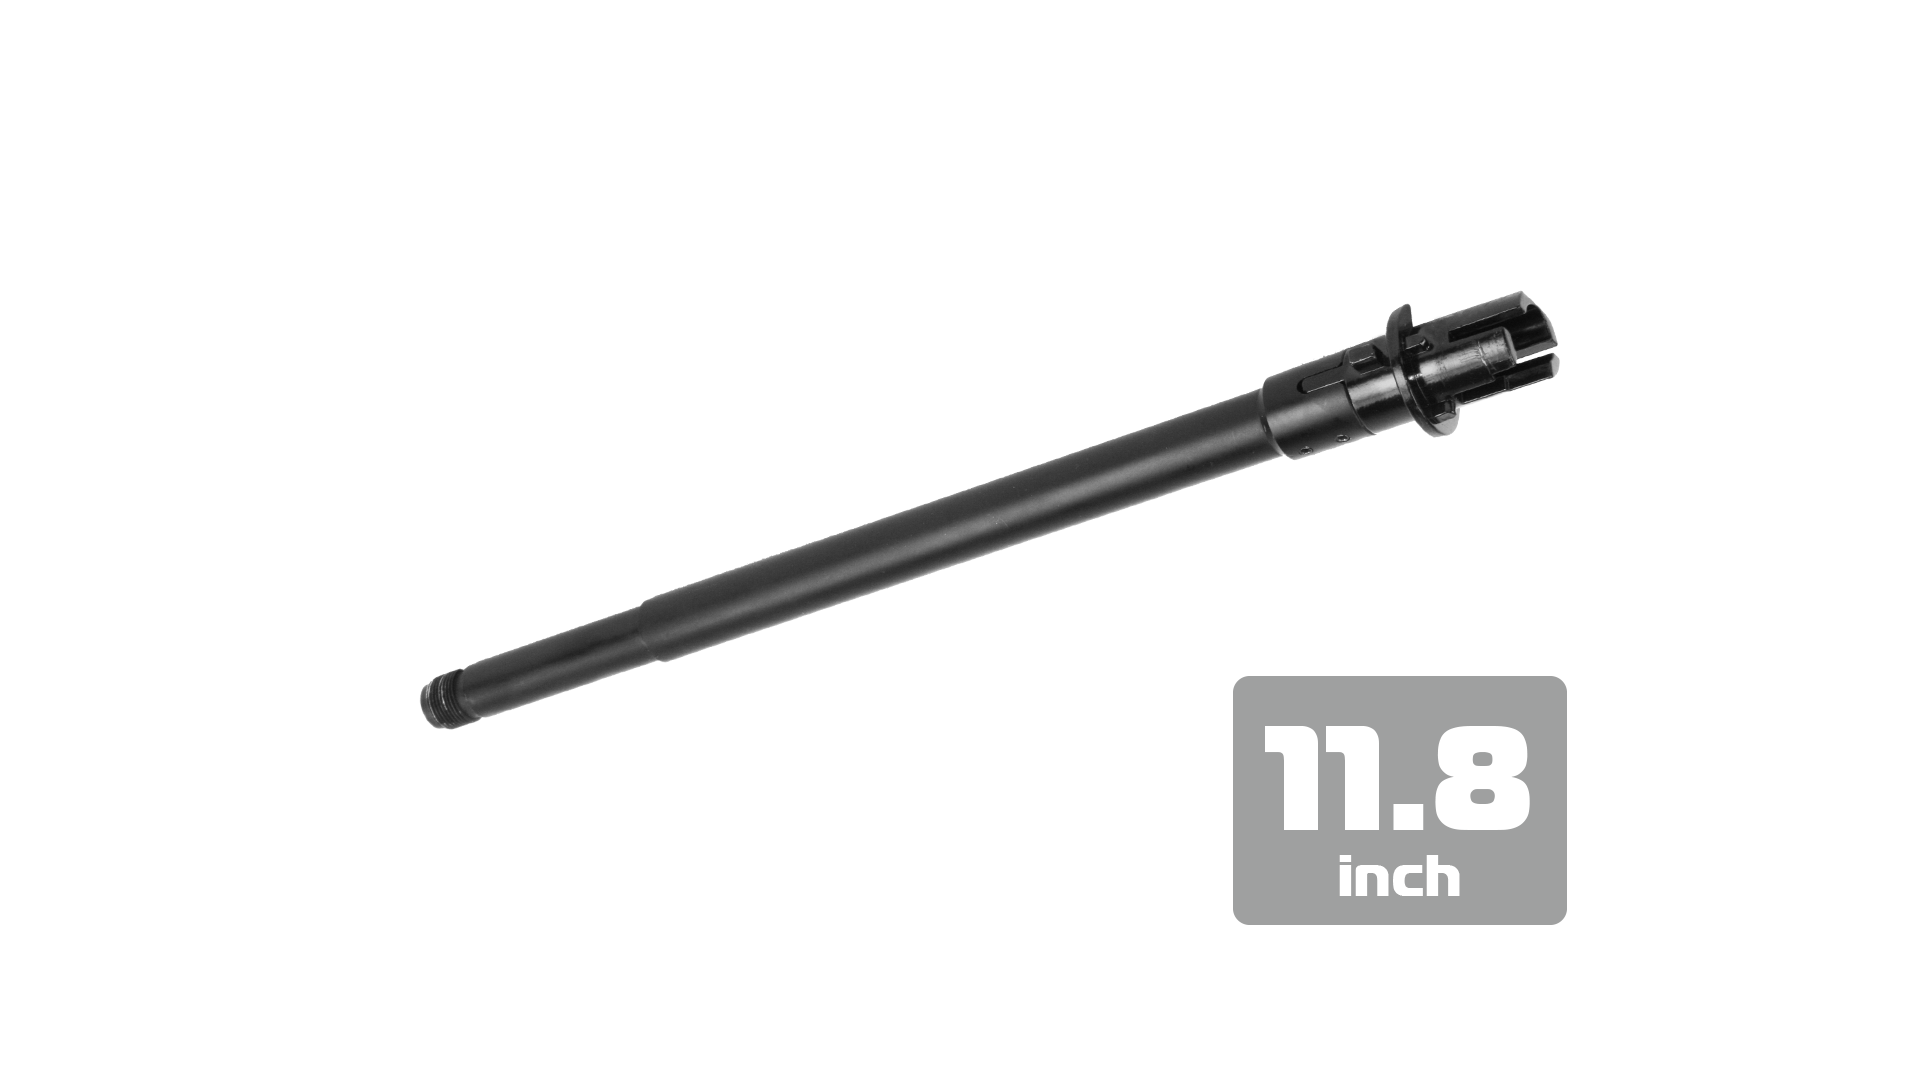 【MA-322】CXP-16 槍管組 (11.8